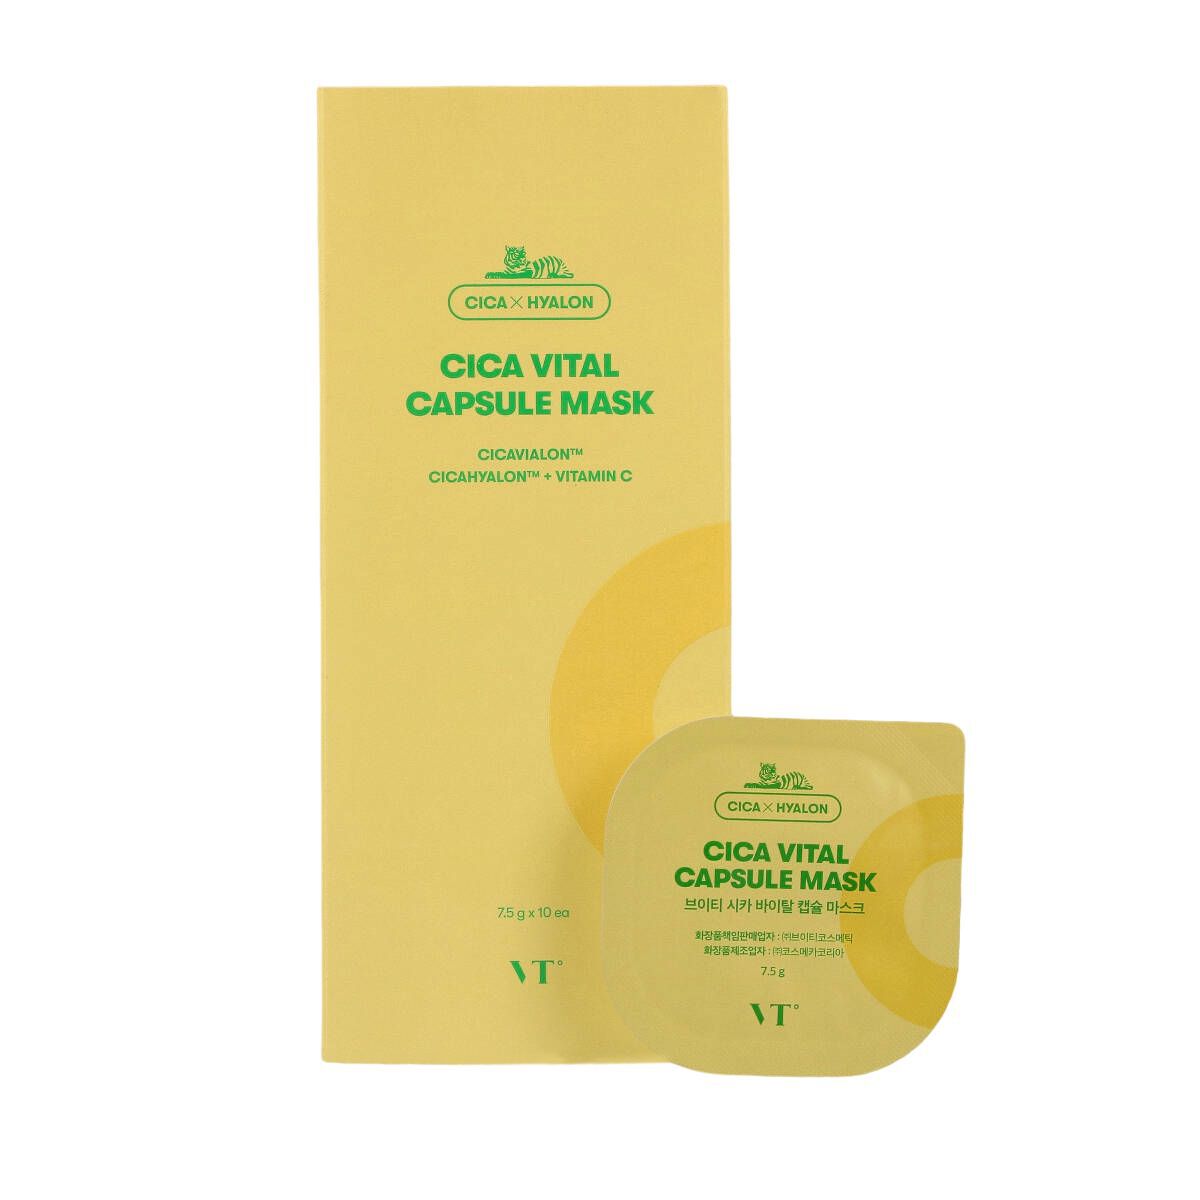 Набор осветляющих масок в капсулах Vt Cosmetics Cica Vital, 10 шт/1 упаковка